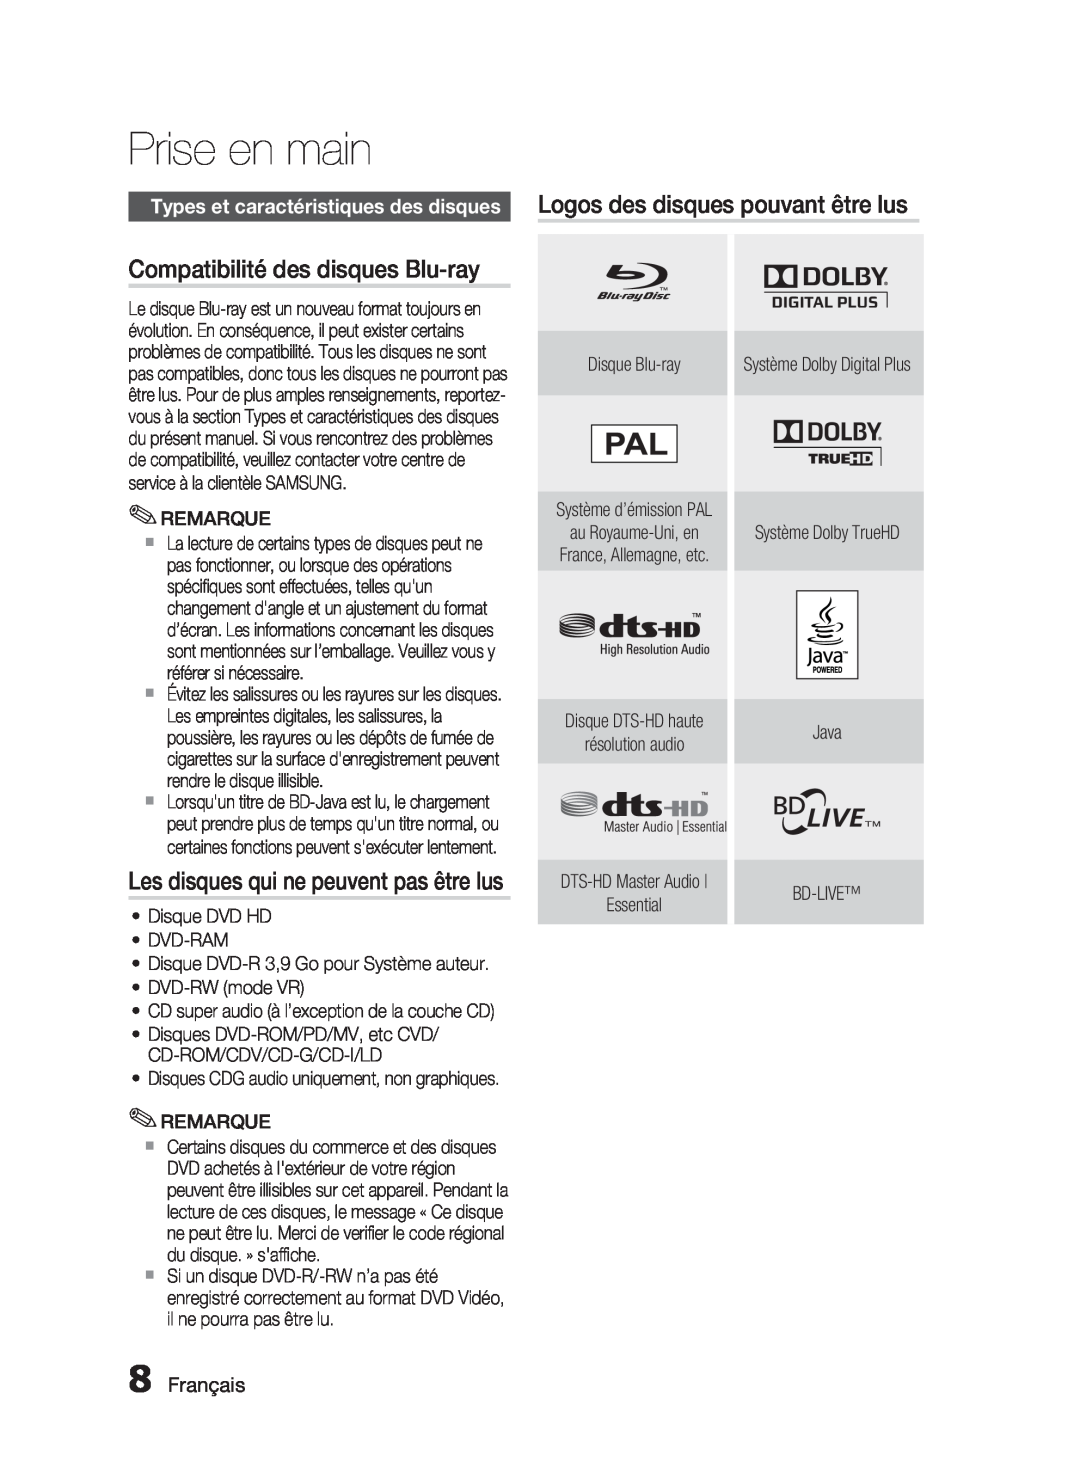 Samsung HT-C6200/XEF Compatibilité des disques Blu-ray, Les disques qui ne peuvent pas être lus, Français, Prise en main 